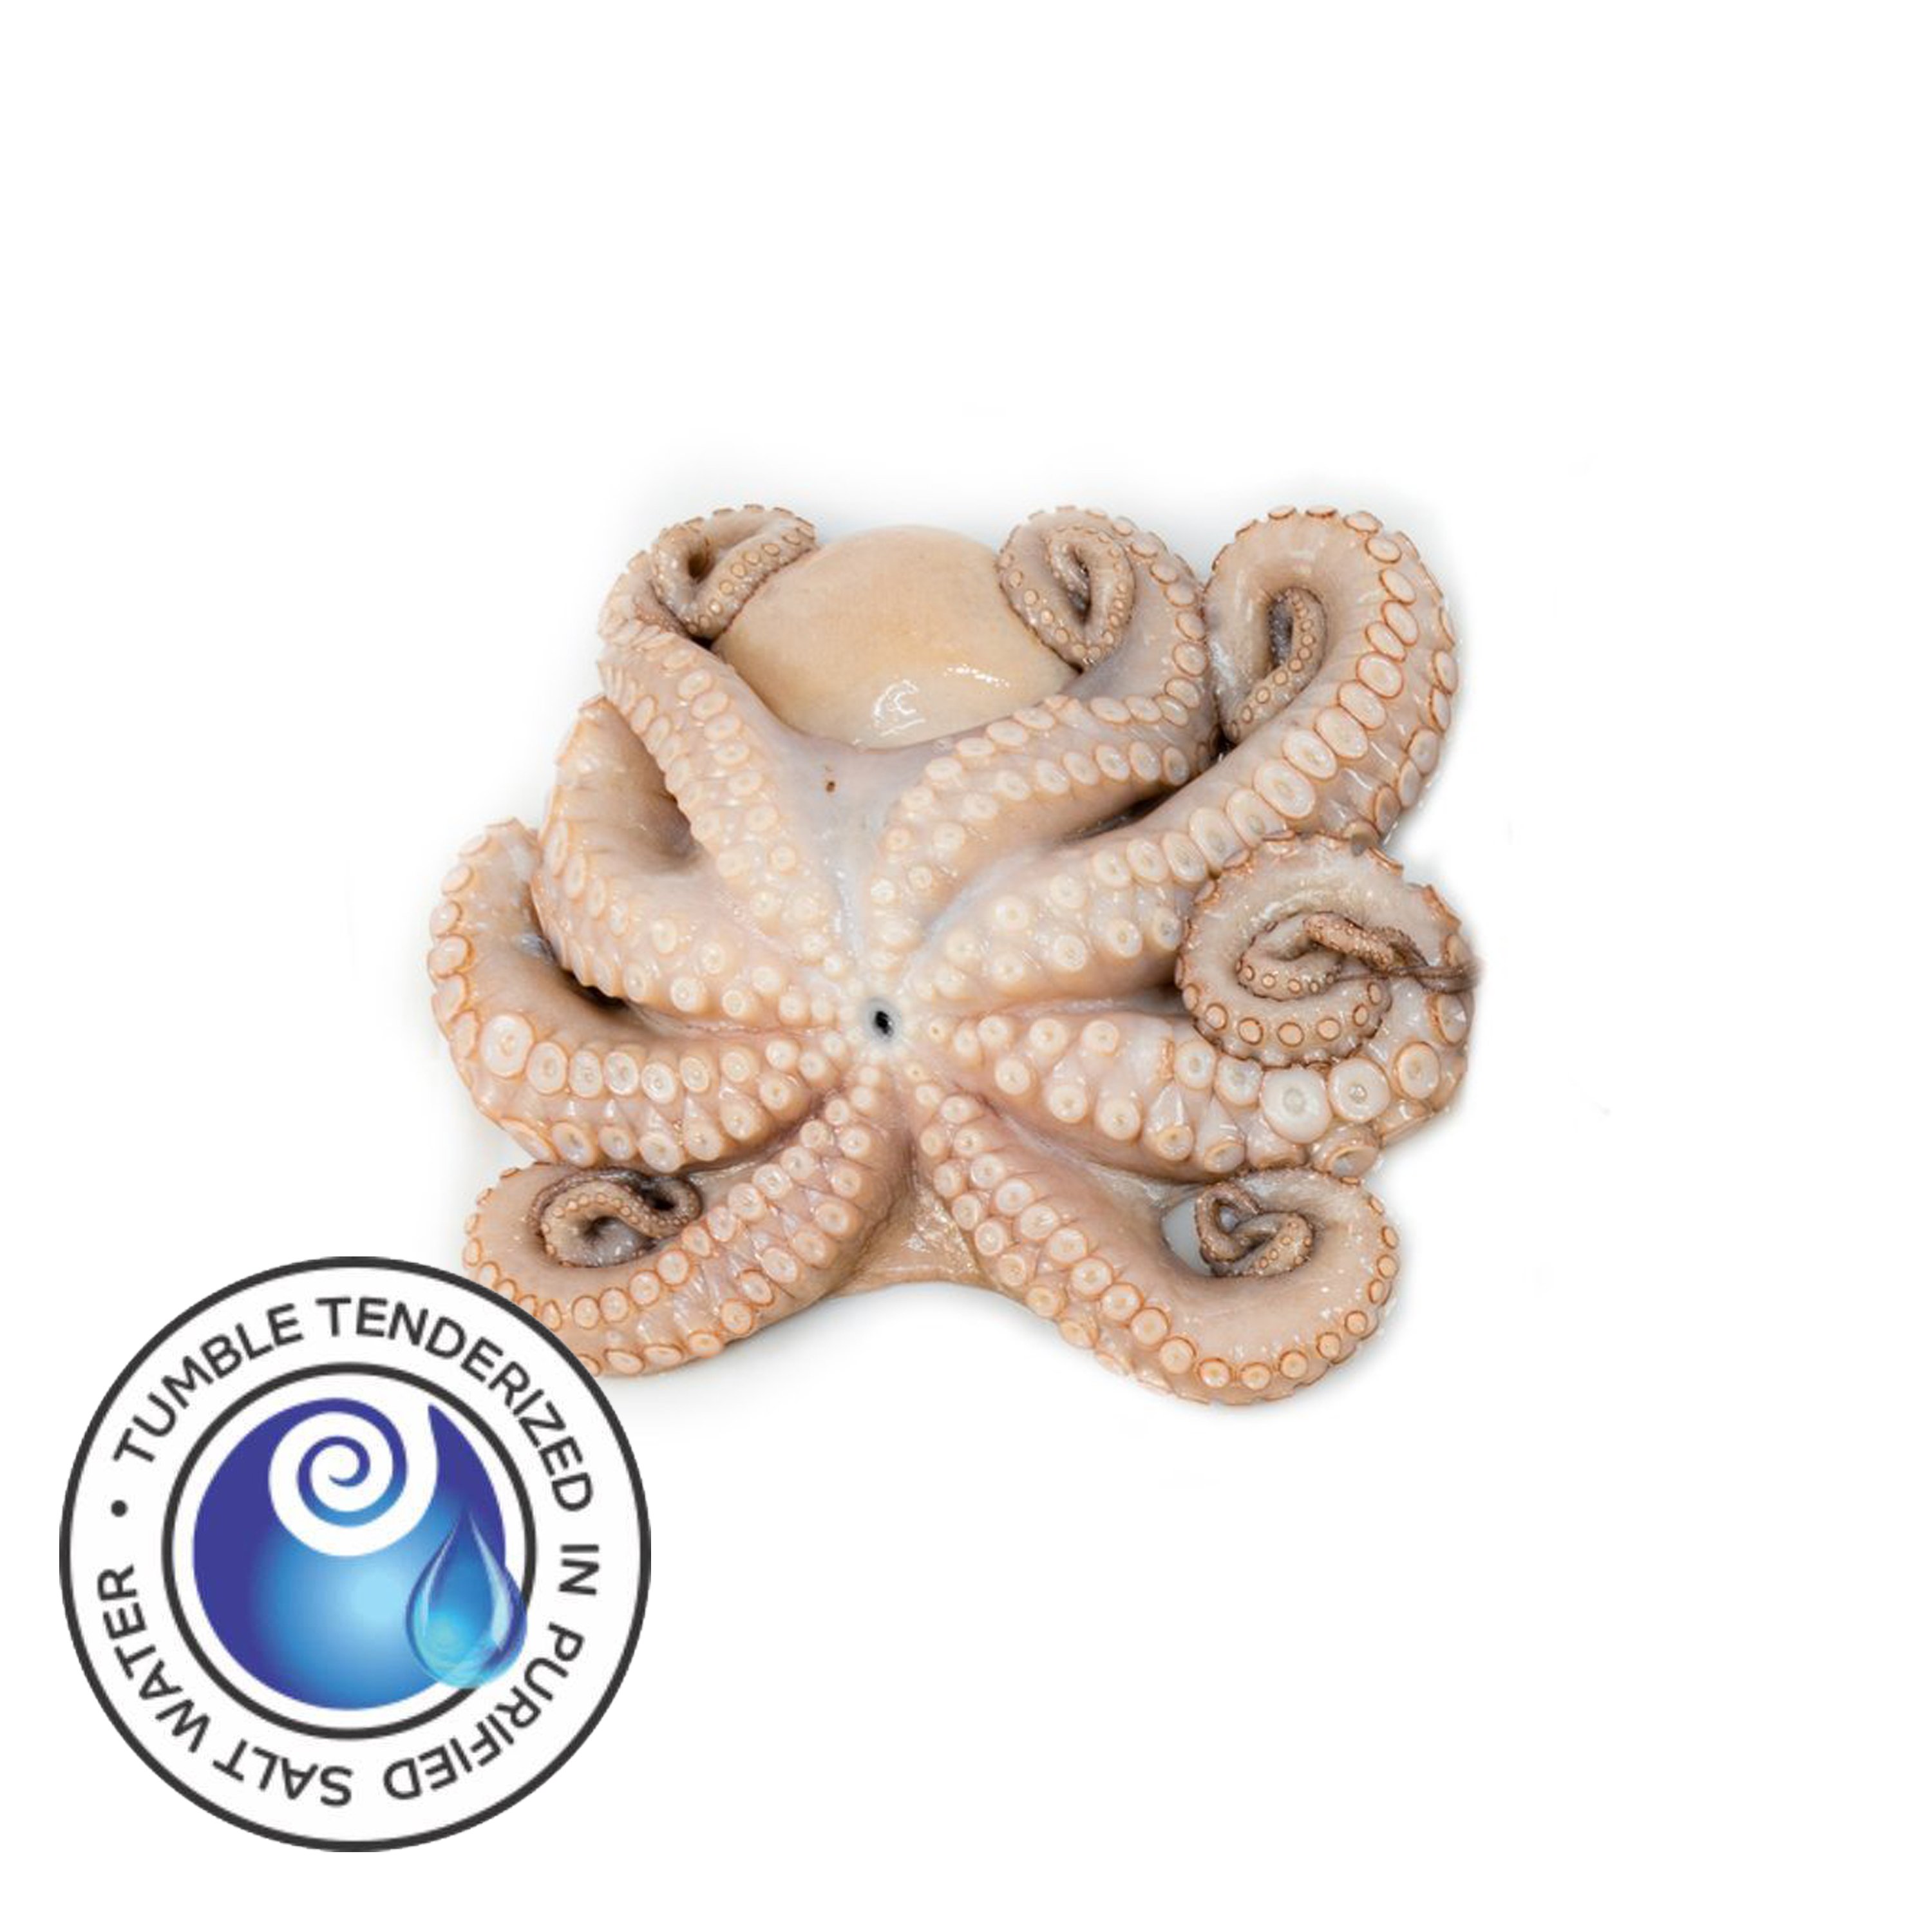 Tenderized Octopus 2-4 lbs (T5)